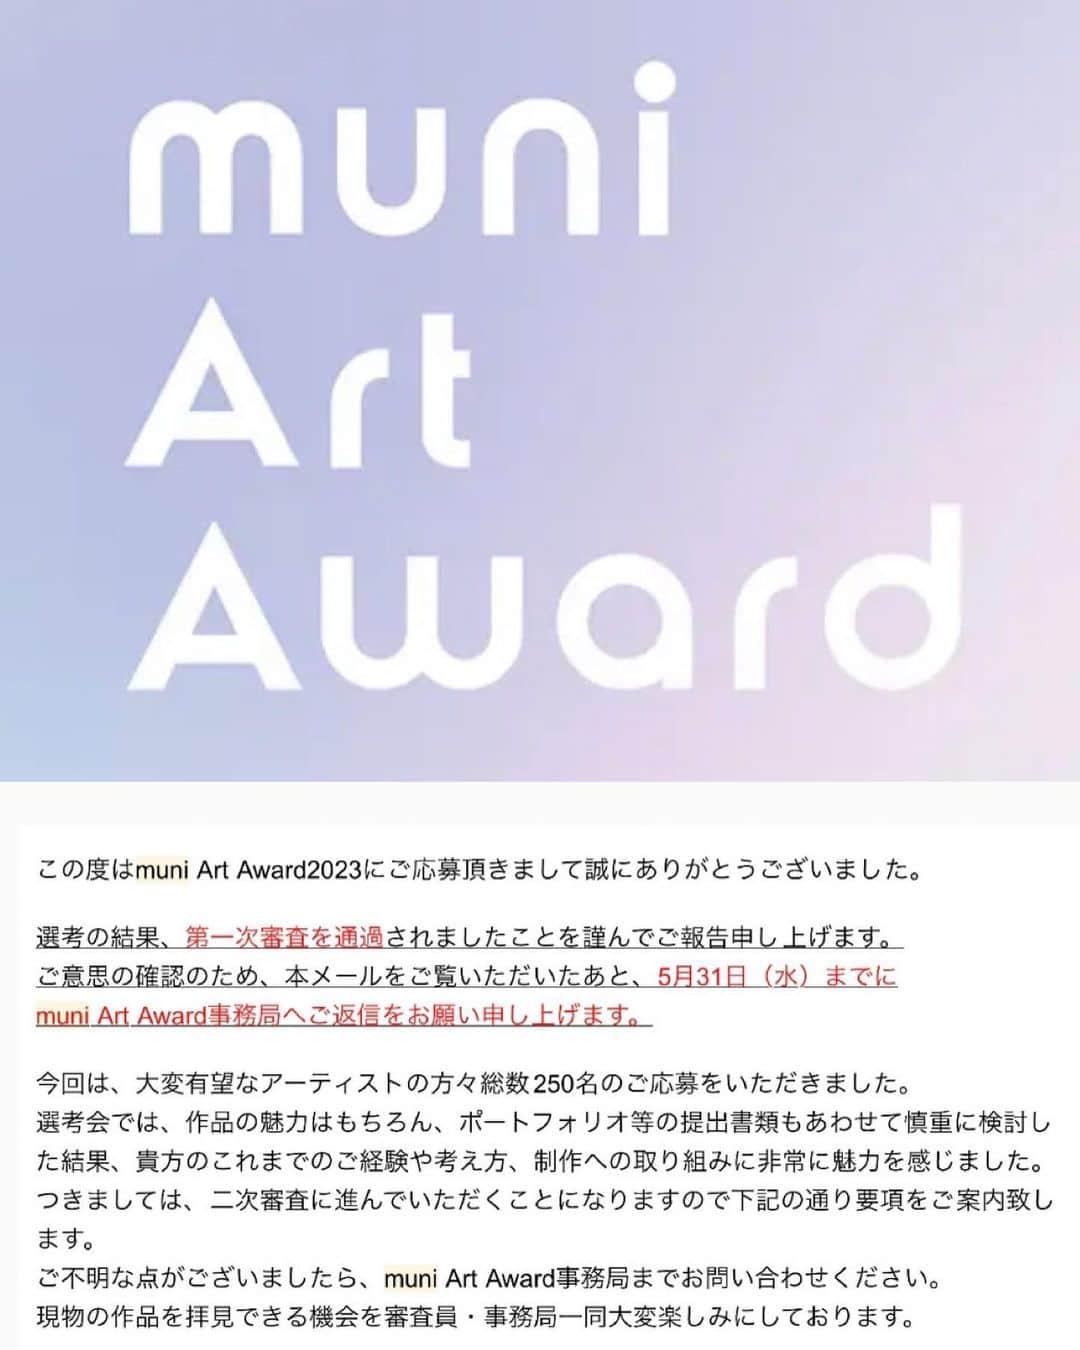 たなかあずさのインスタグラム：「muni art award にて私のアート作品が一次審査に通過しておりました。通らないと思っていたので嬉しい、まさかと驚きました。二次へ向けて精進します。」